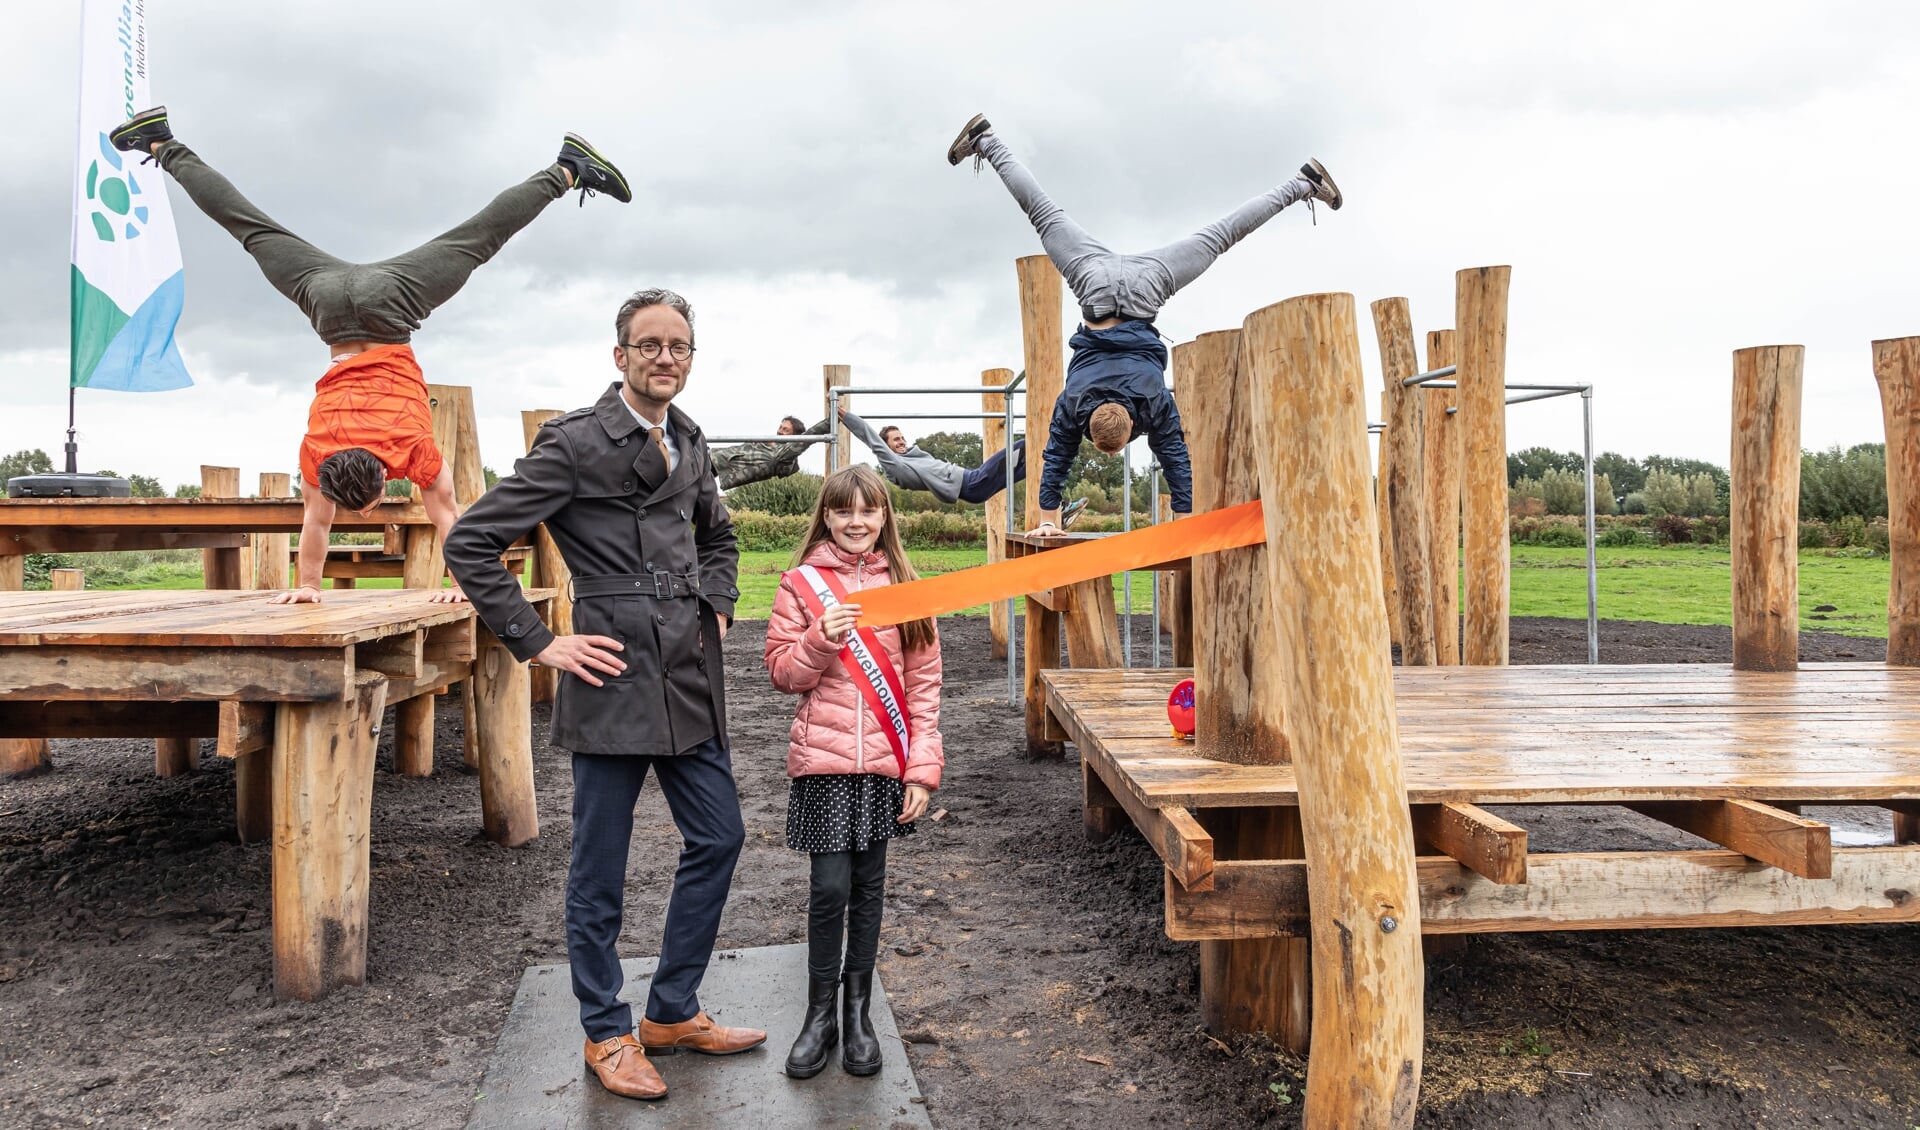 • Wethouder Thierry van Vugt en kinderwethouder Milou openden het park.